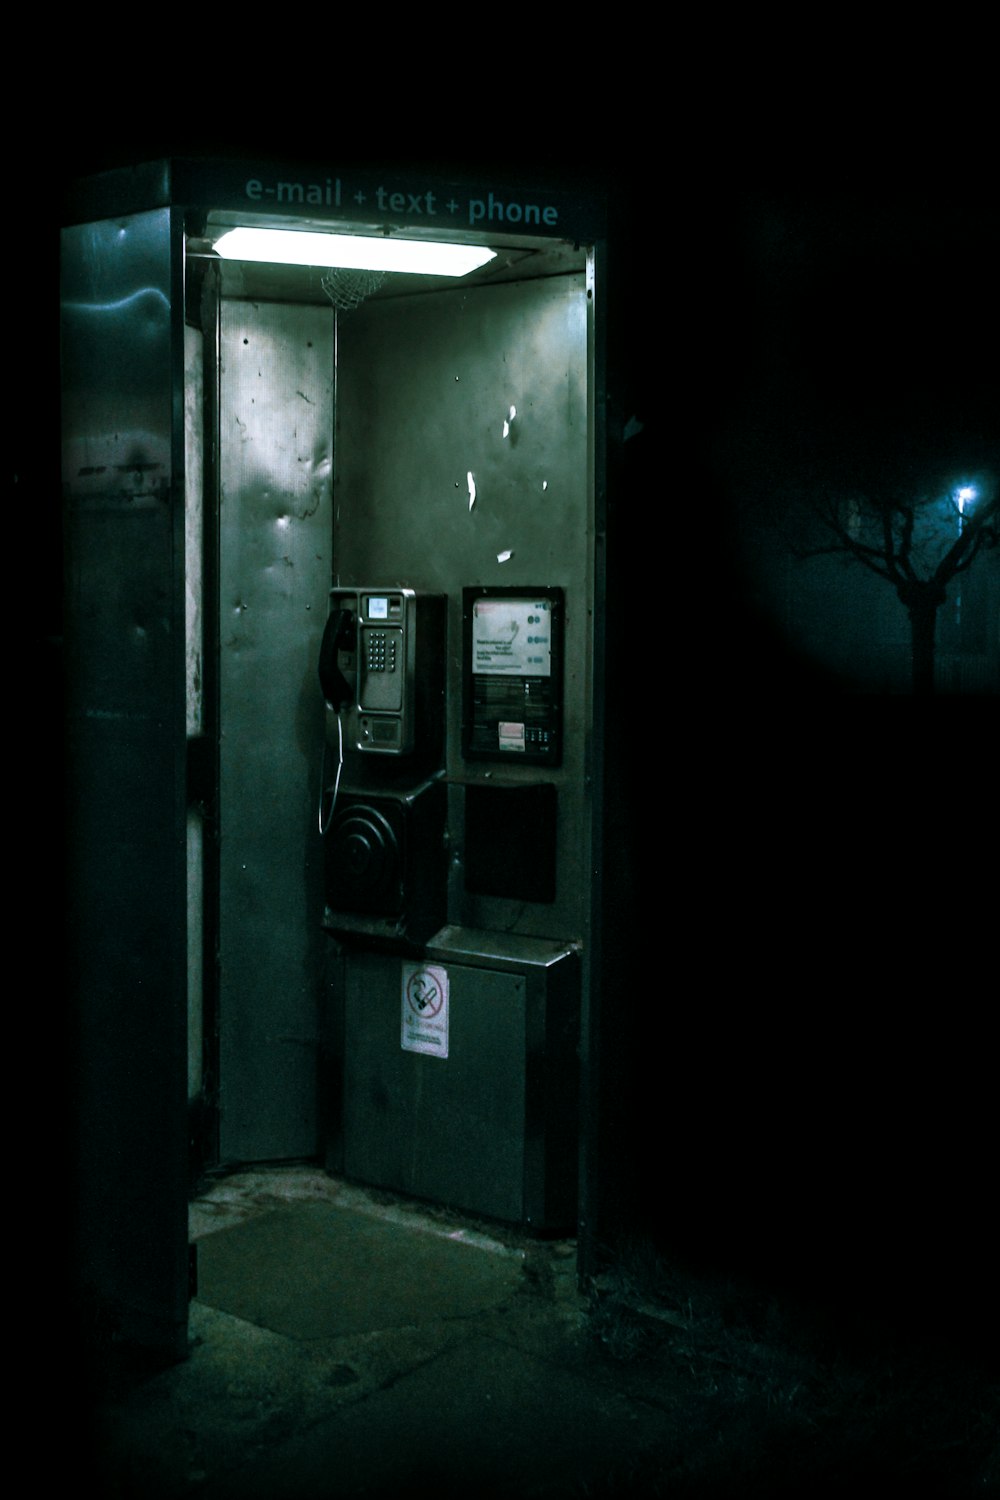 cabine telefônica verde e preta